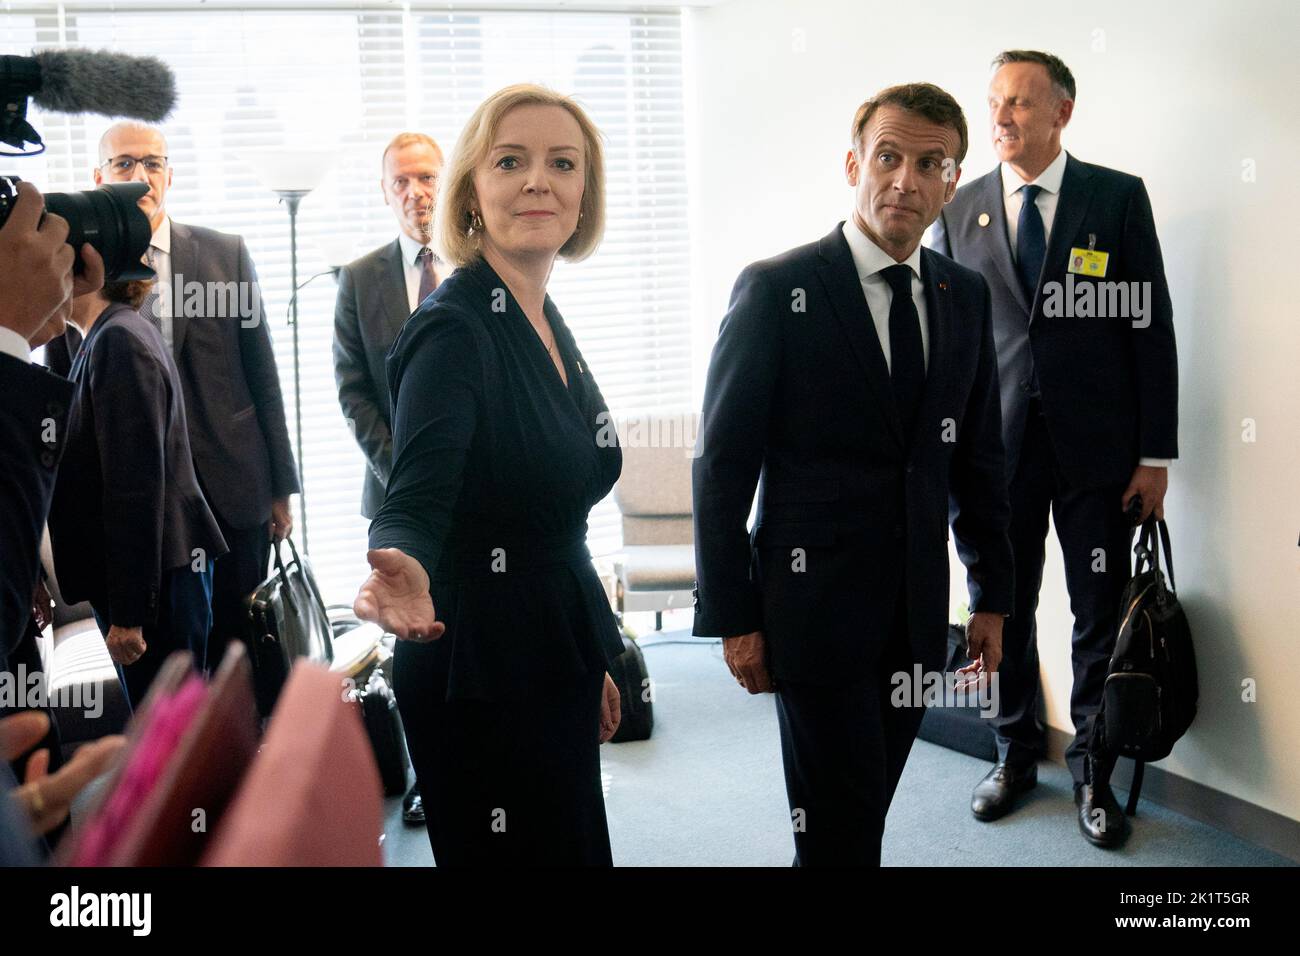 La primera ministra Liz Truss (de centro izquierda) celebra una reunión bilateral con el presidente de Francia, Emmanuel Macron (de centro derecha), en la sede de las Naciones Unidas en Nueva York, durante su visita a Estados Unidos para asistir a la Asamblea General de las Naciones Unidas de 77th. Fecha de la foto: Martes 20 de septiembre de 2022. Foto de stock